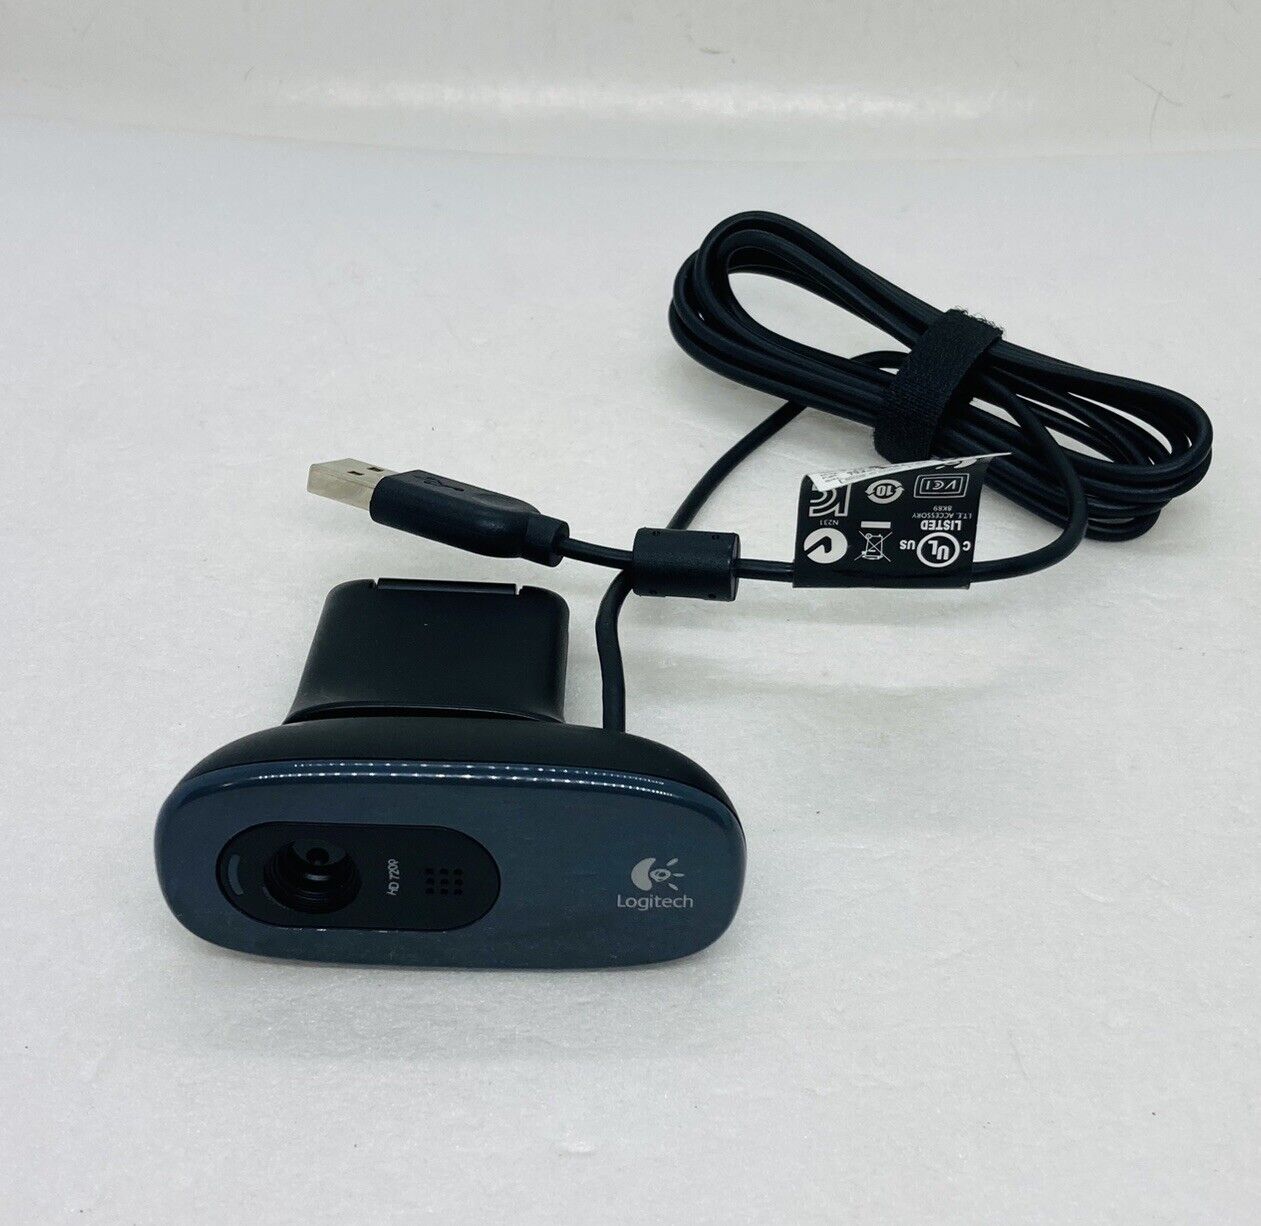 Logitech C270 HD Webcam 720p Logi V-U0018 Built-In Microphone USB Camera 26